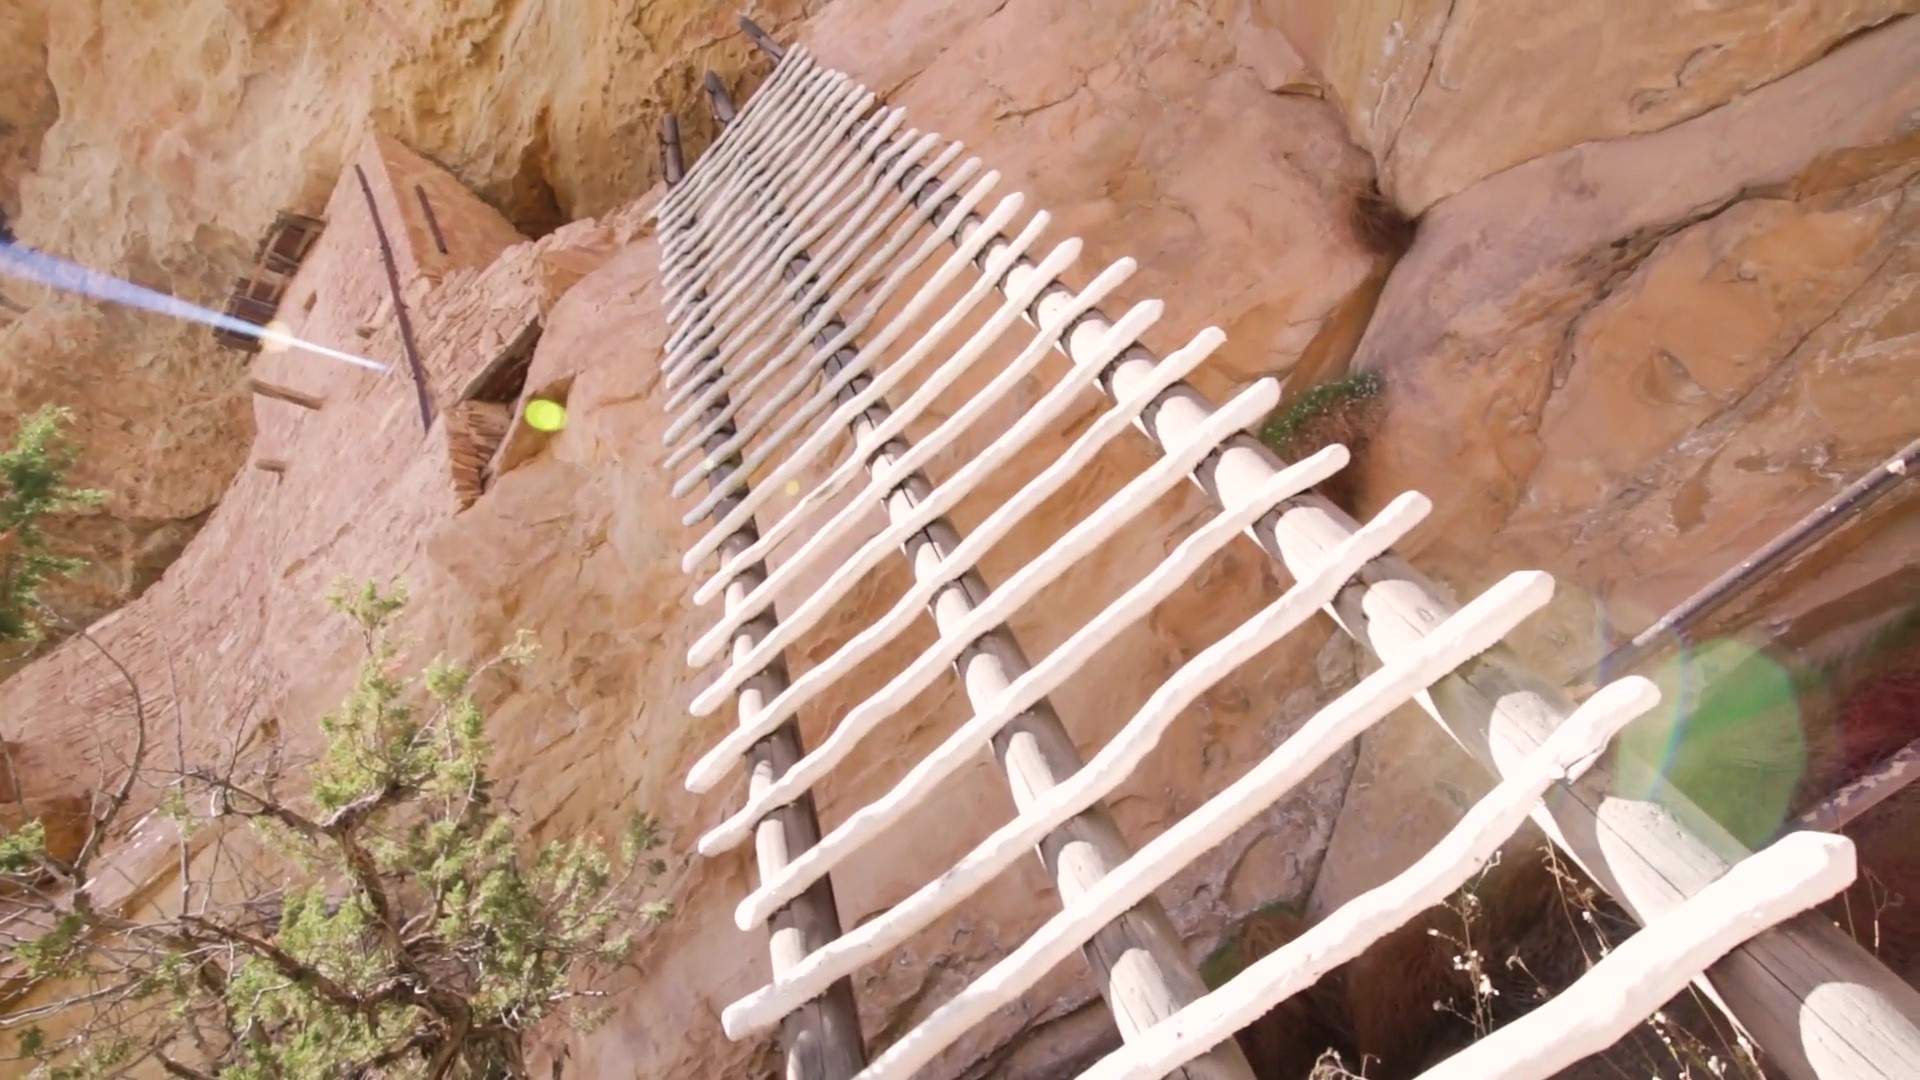 미국 국립공원 완전정복 유튜브 제21편: 고고학 유적지인 콜로라도 남서쪽 메사버디(Mesa Verde) 국립공원